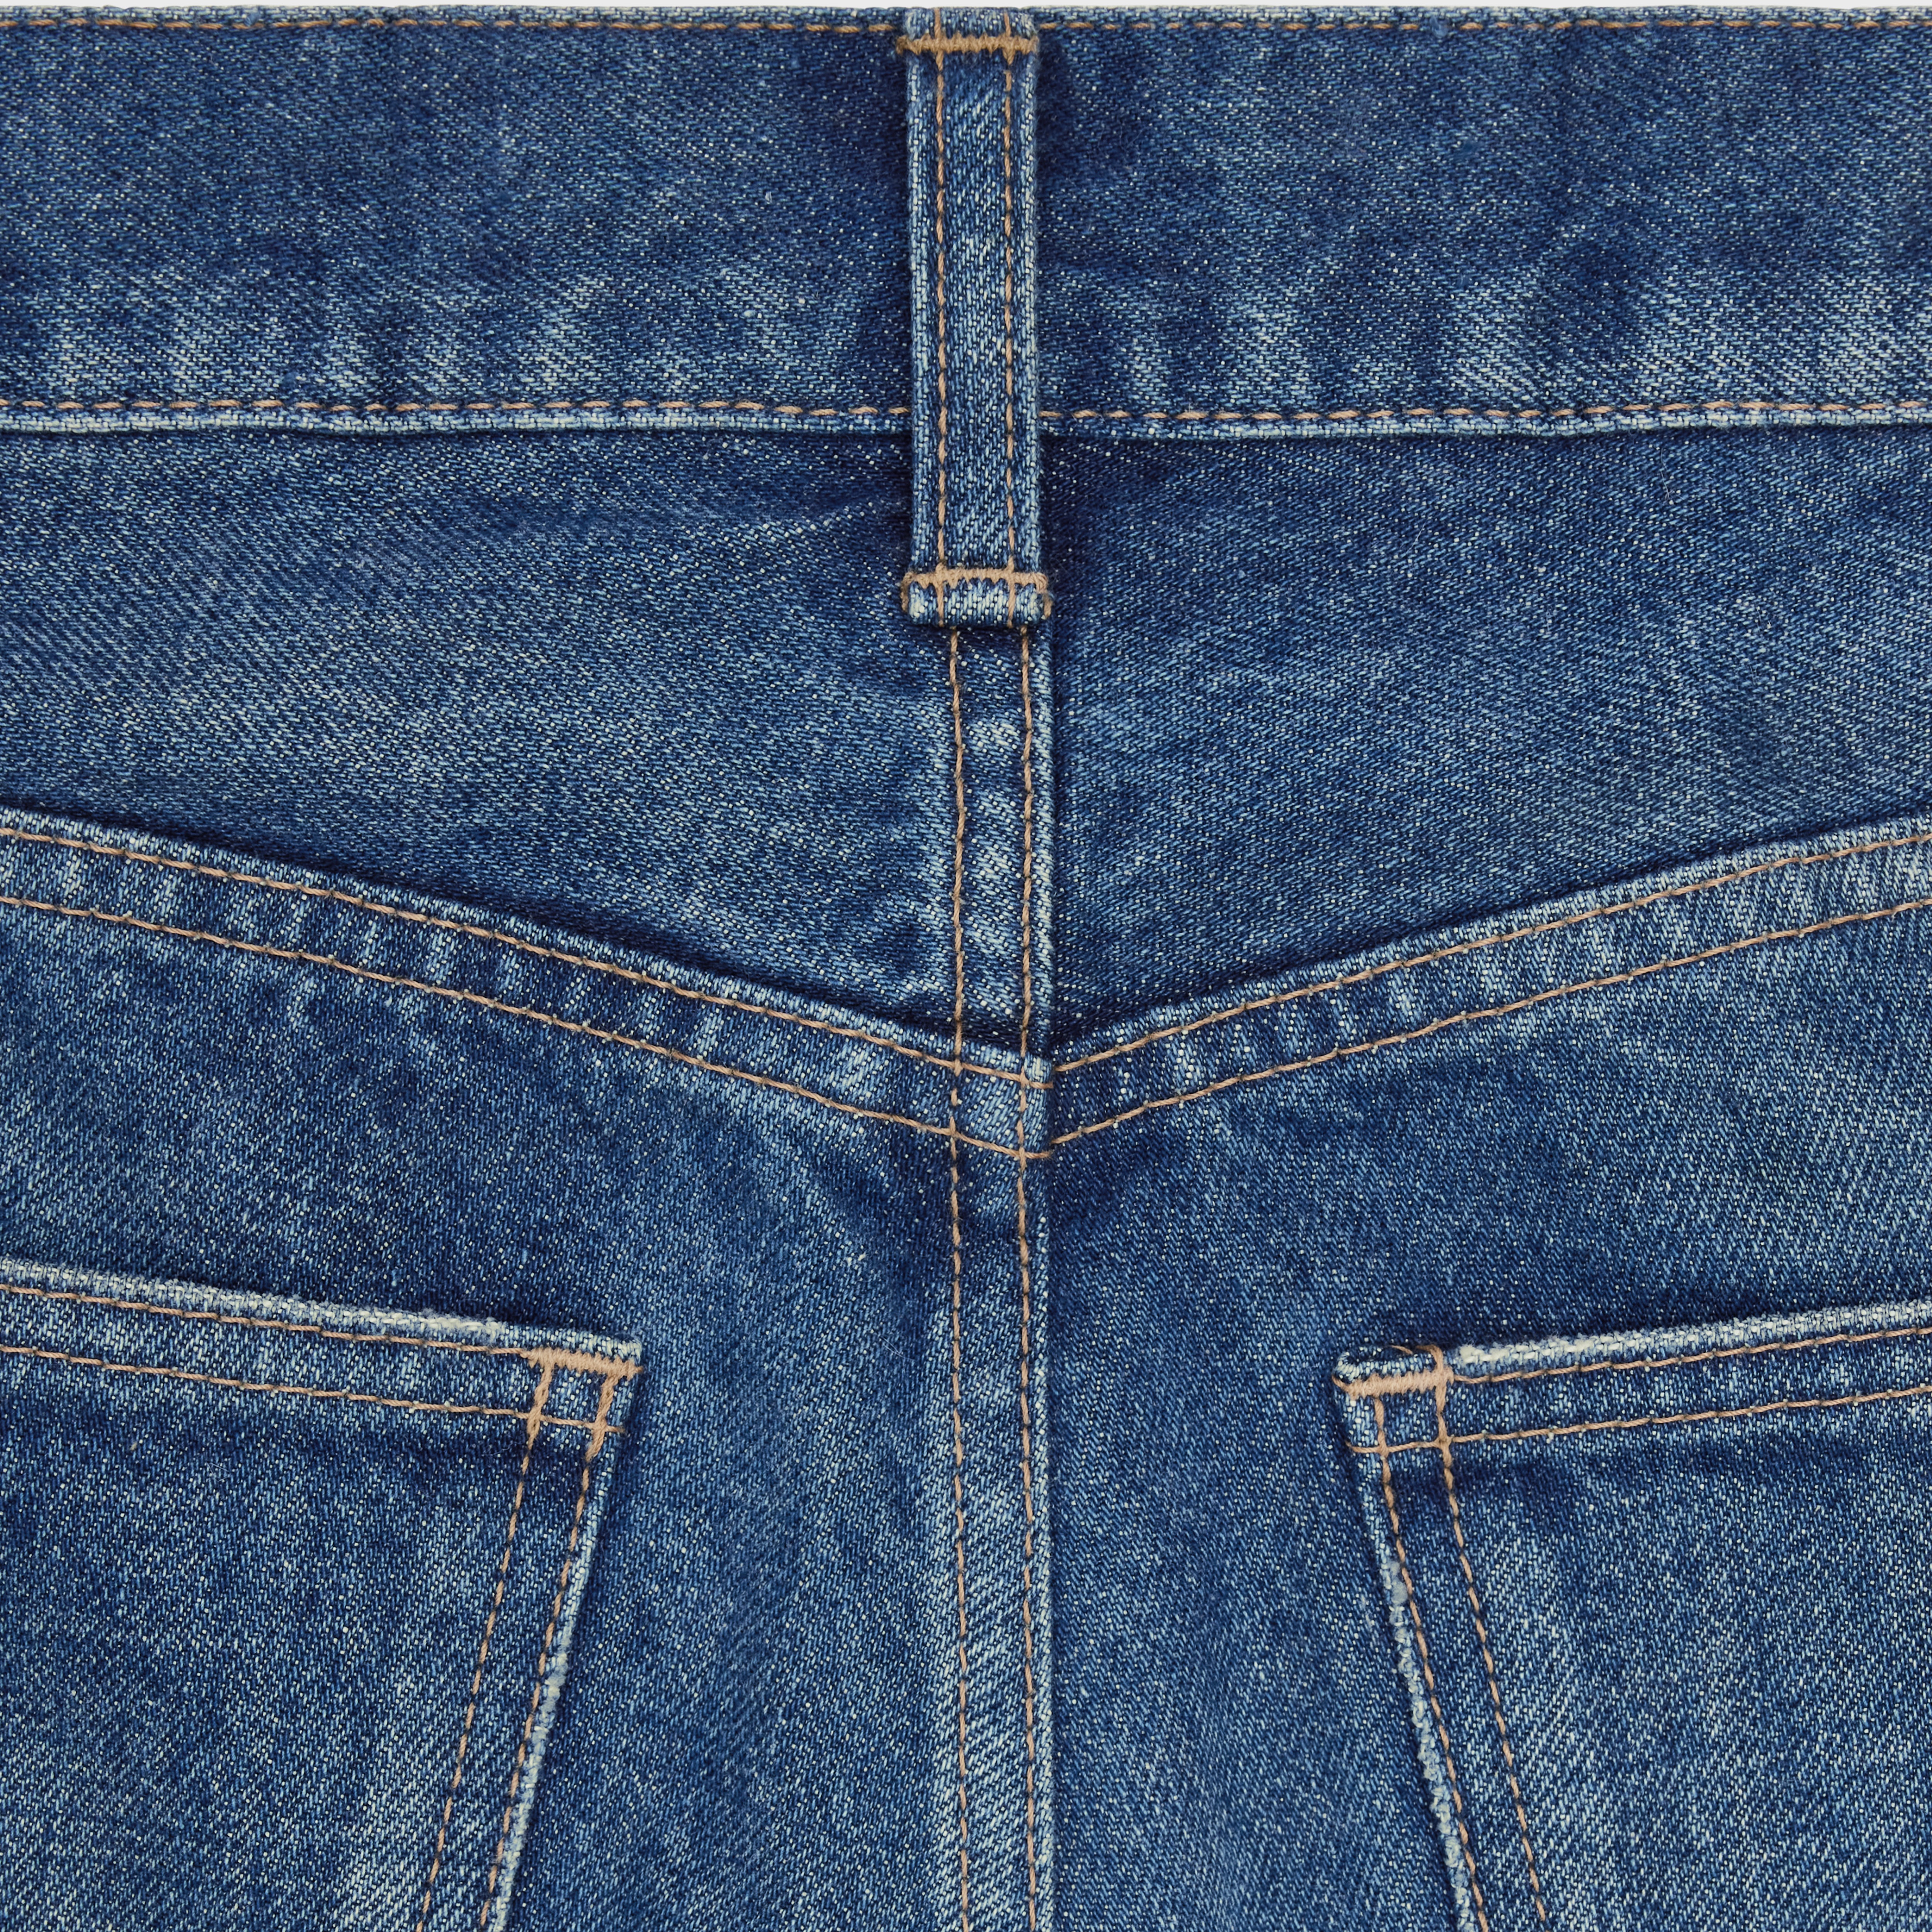 Lou jeans in vintage dark union wash denim - 3